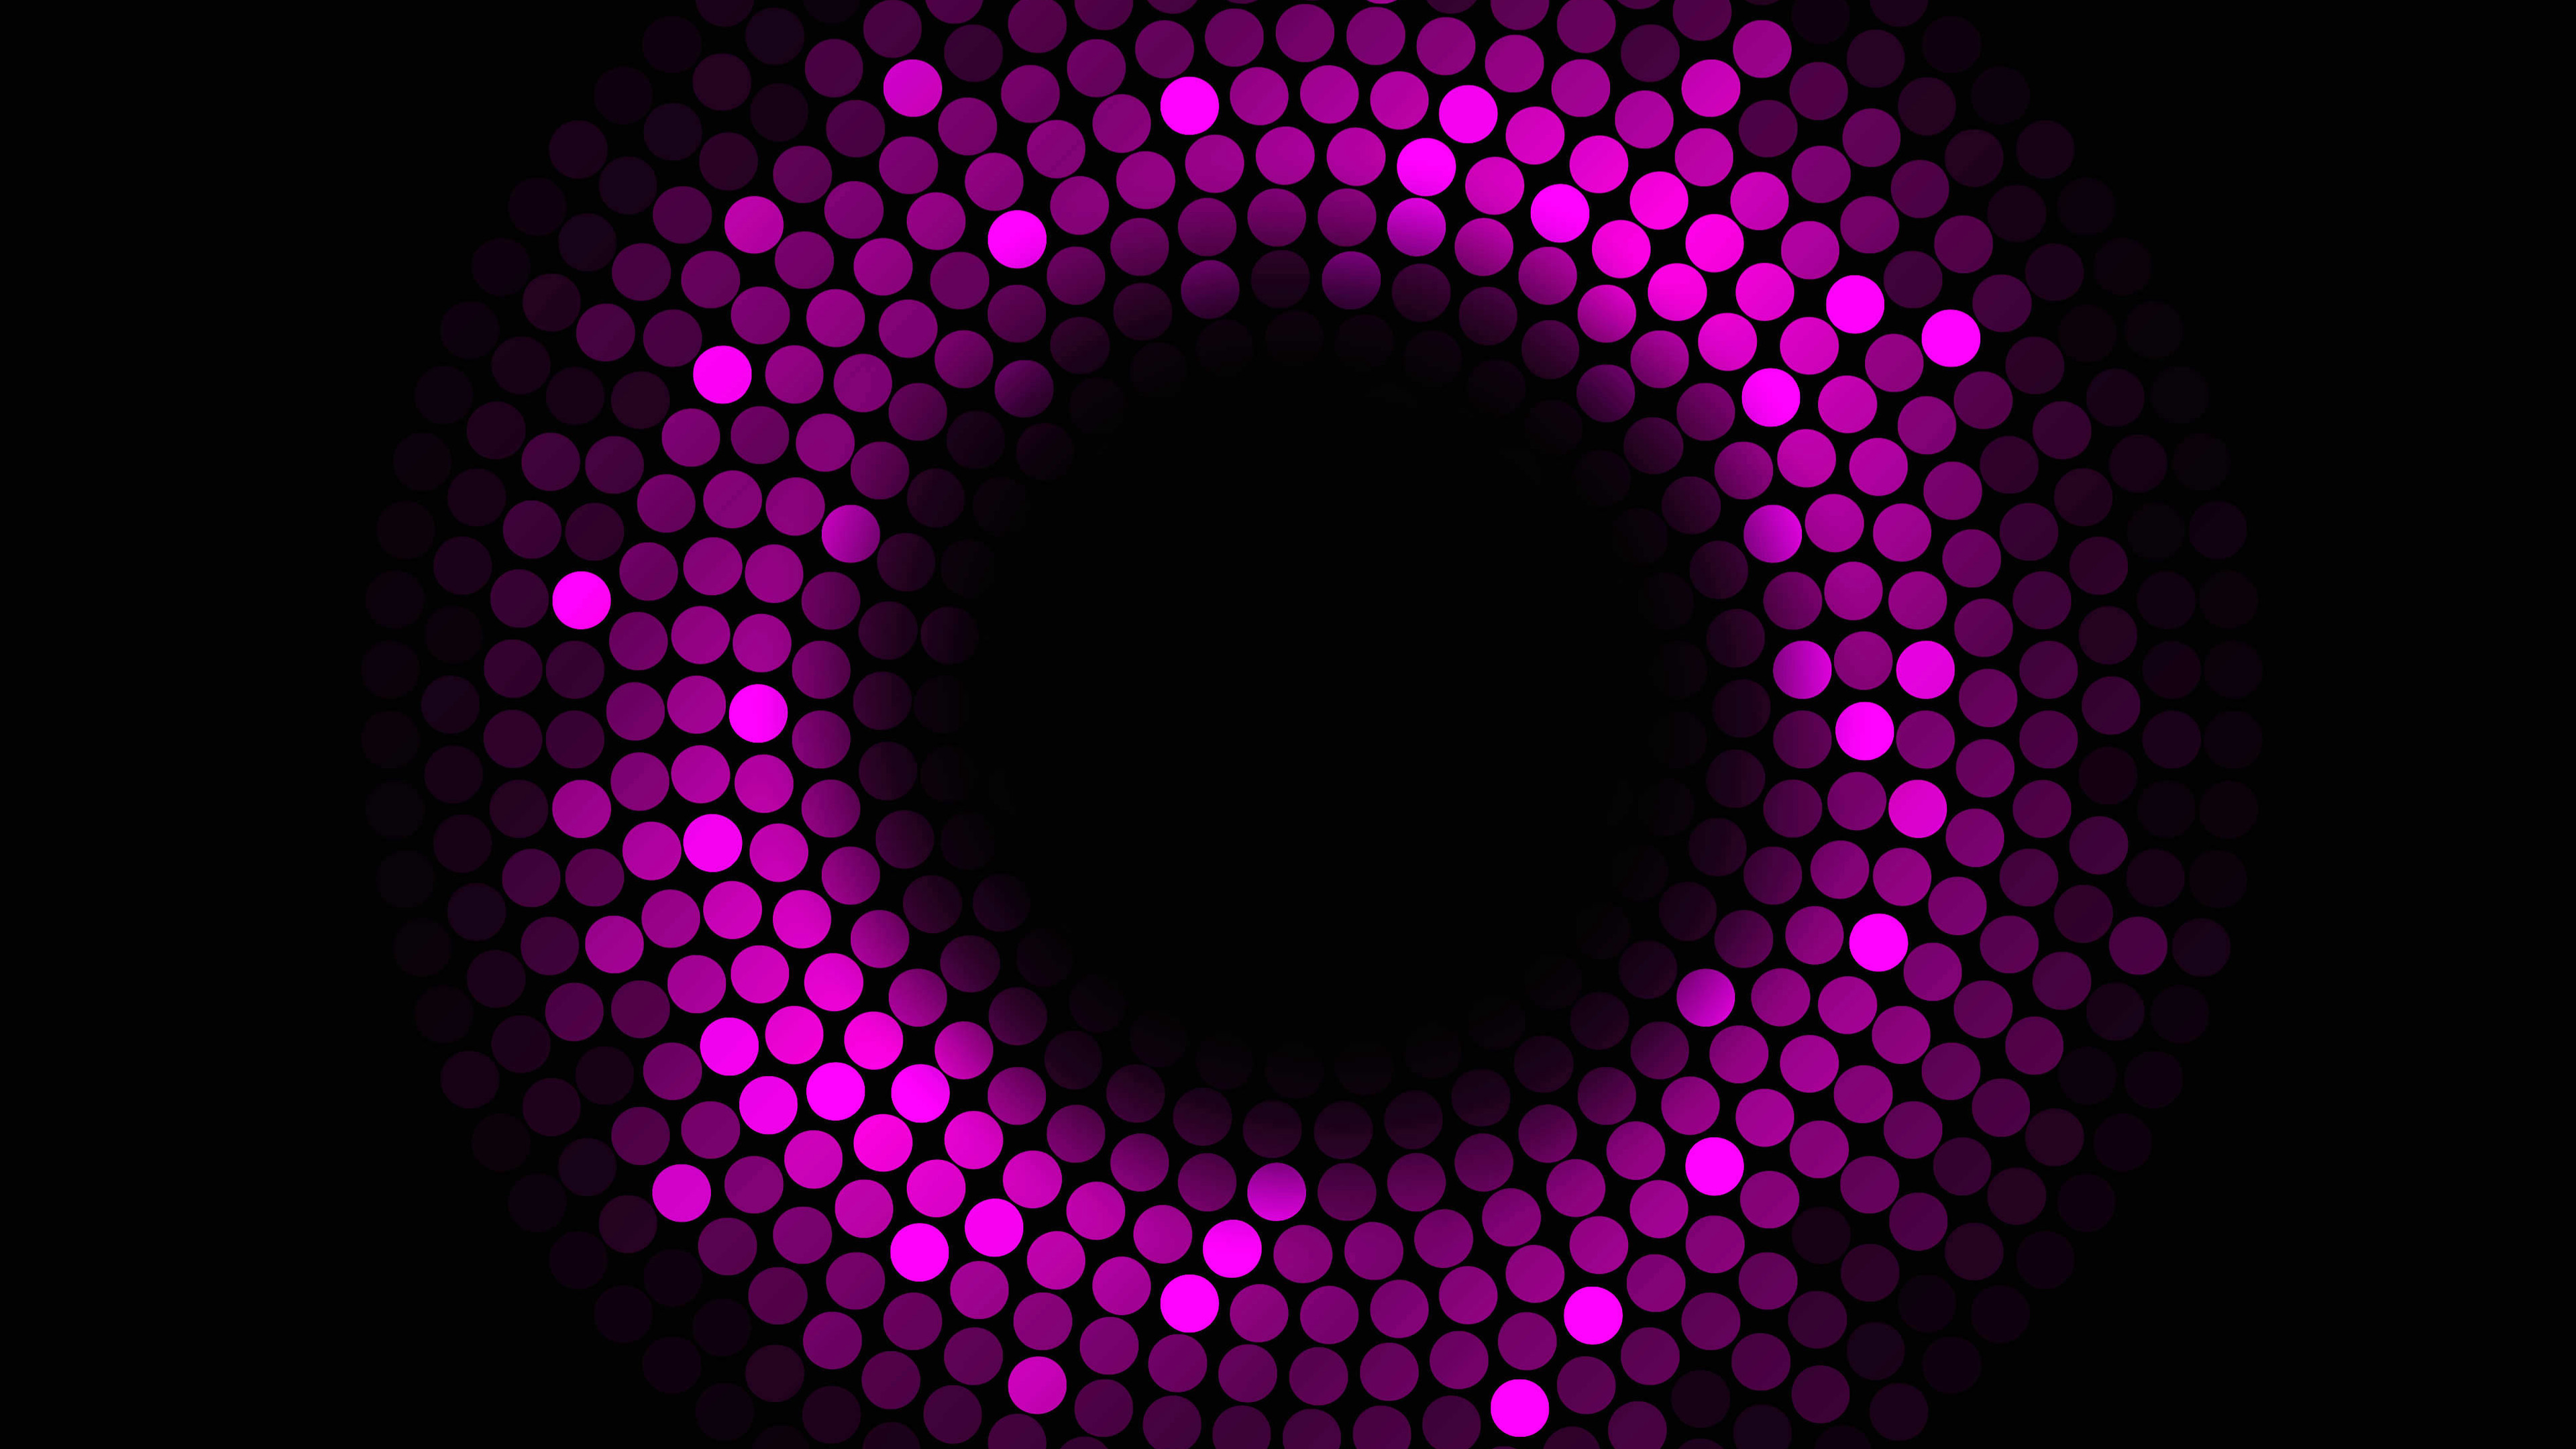 abstract circles violet 4k 1551645774 - Abstract Circles Violet 4k - violet wallpapers, hd-wallpapers, dots wallpapers, circle wallpapers, abstract wallpapers, 4k-wallpapers